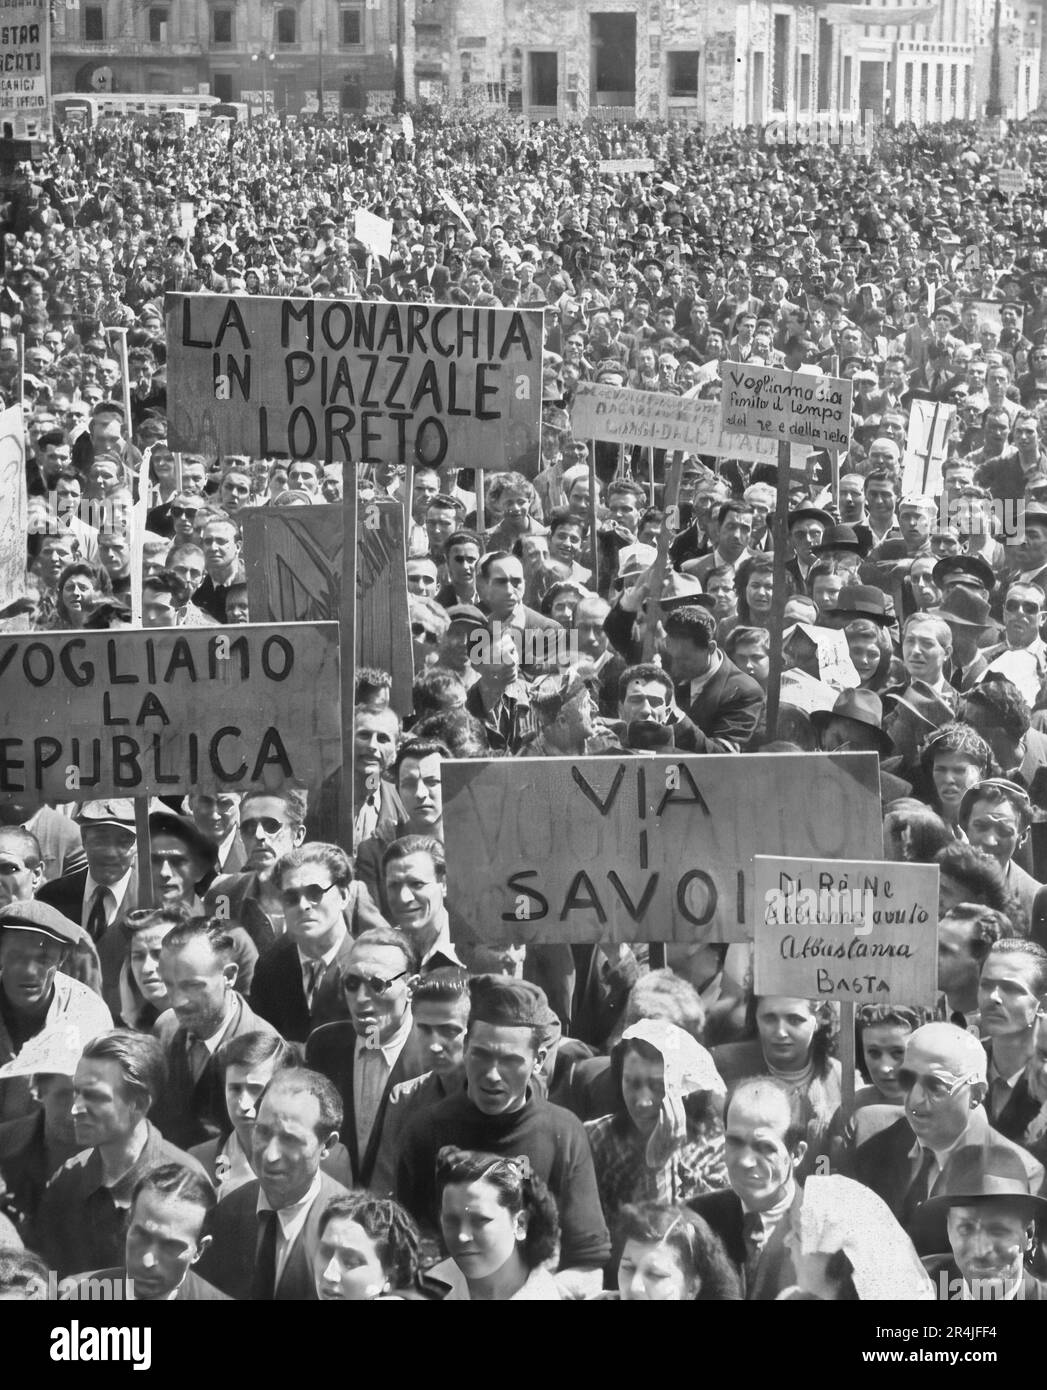 1946, il popolo italiano nella piazza con cartelloni antimonarchici, durante il referendum per la scelta della Monarchia o della Repubblica. Foto Stock